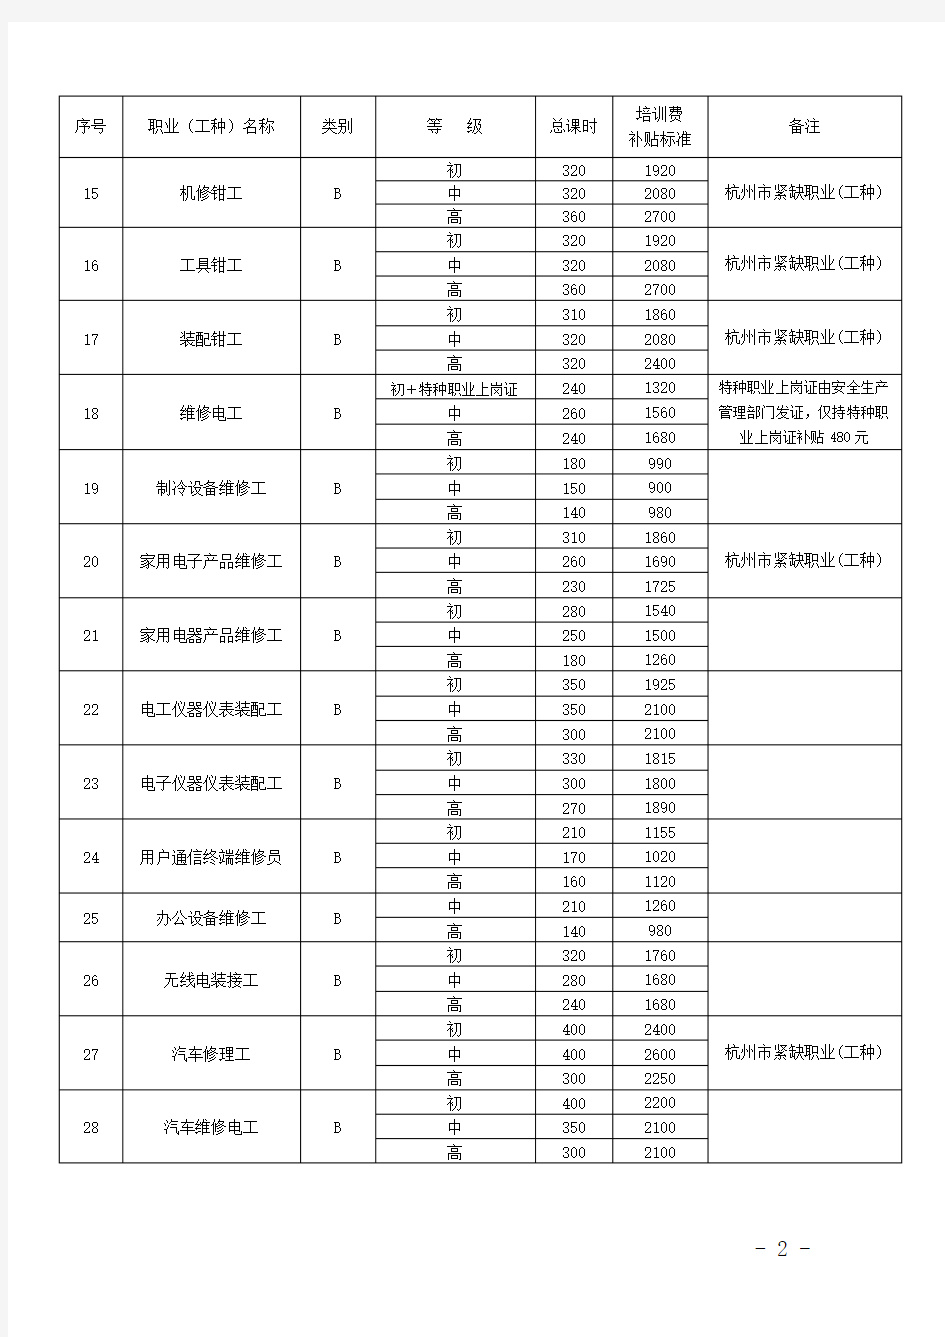 杭州市就业再就业职业技能培训职业(工种)和补贴标准(2011版)